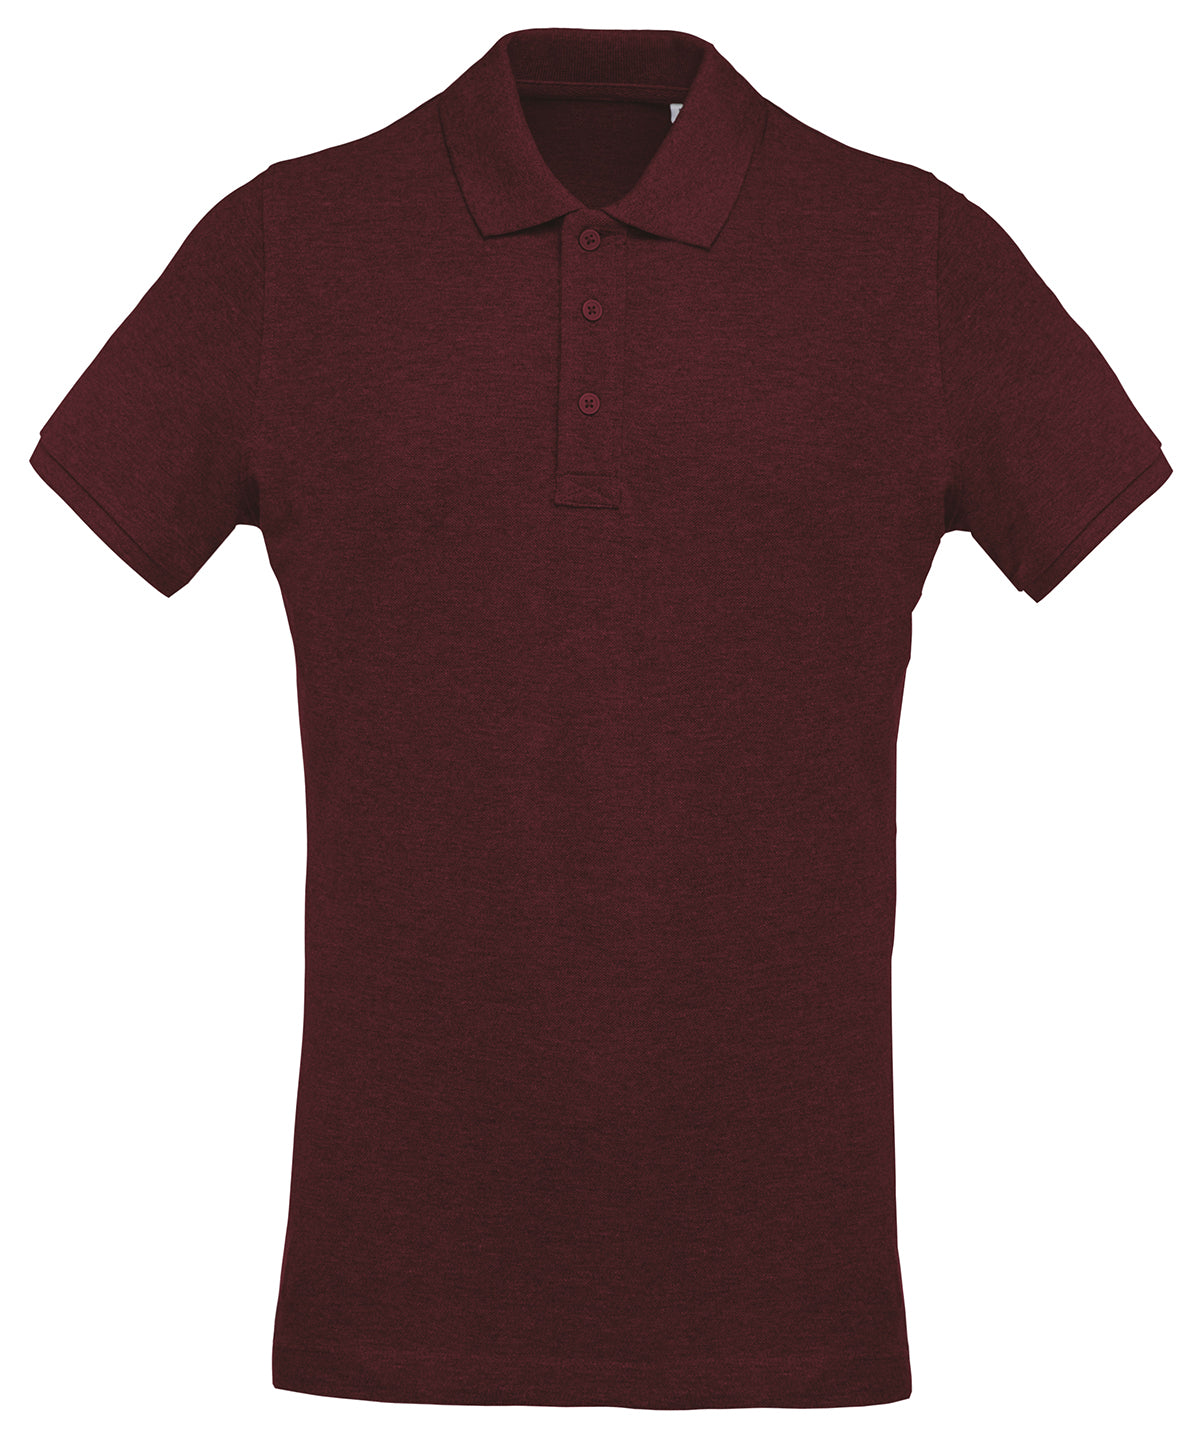 Men's Organic Piqué Short-Sleeved Polo Shirt